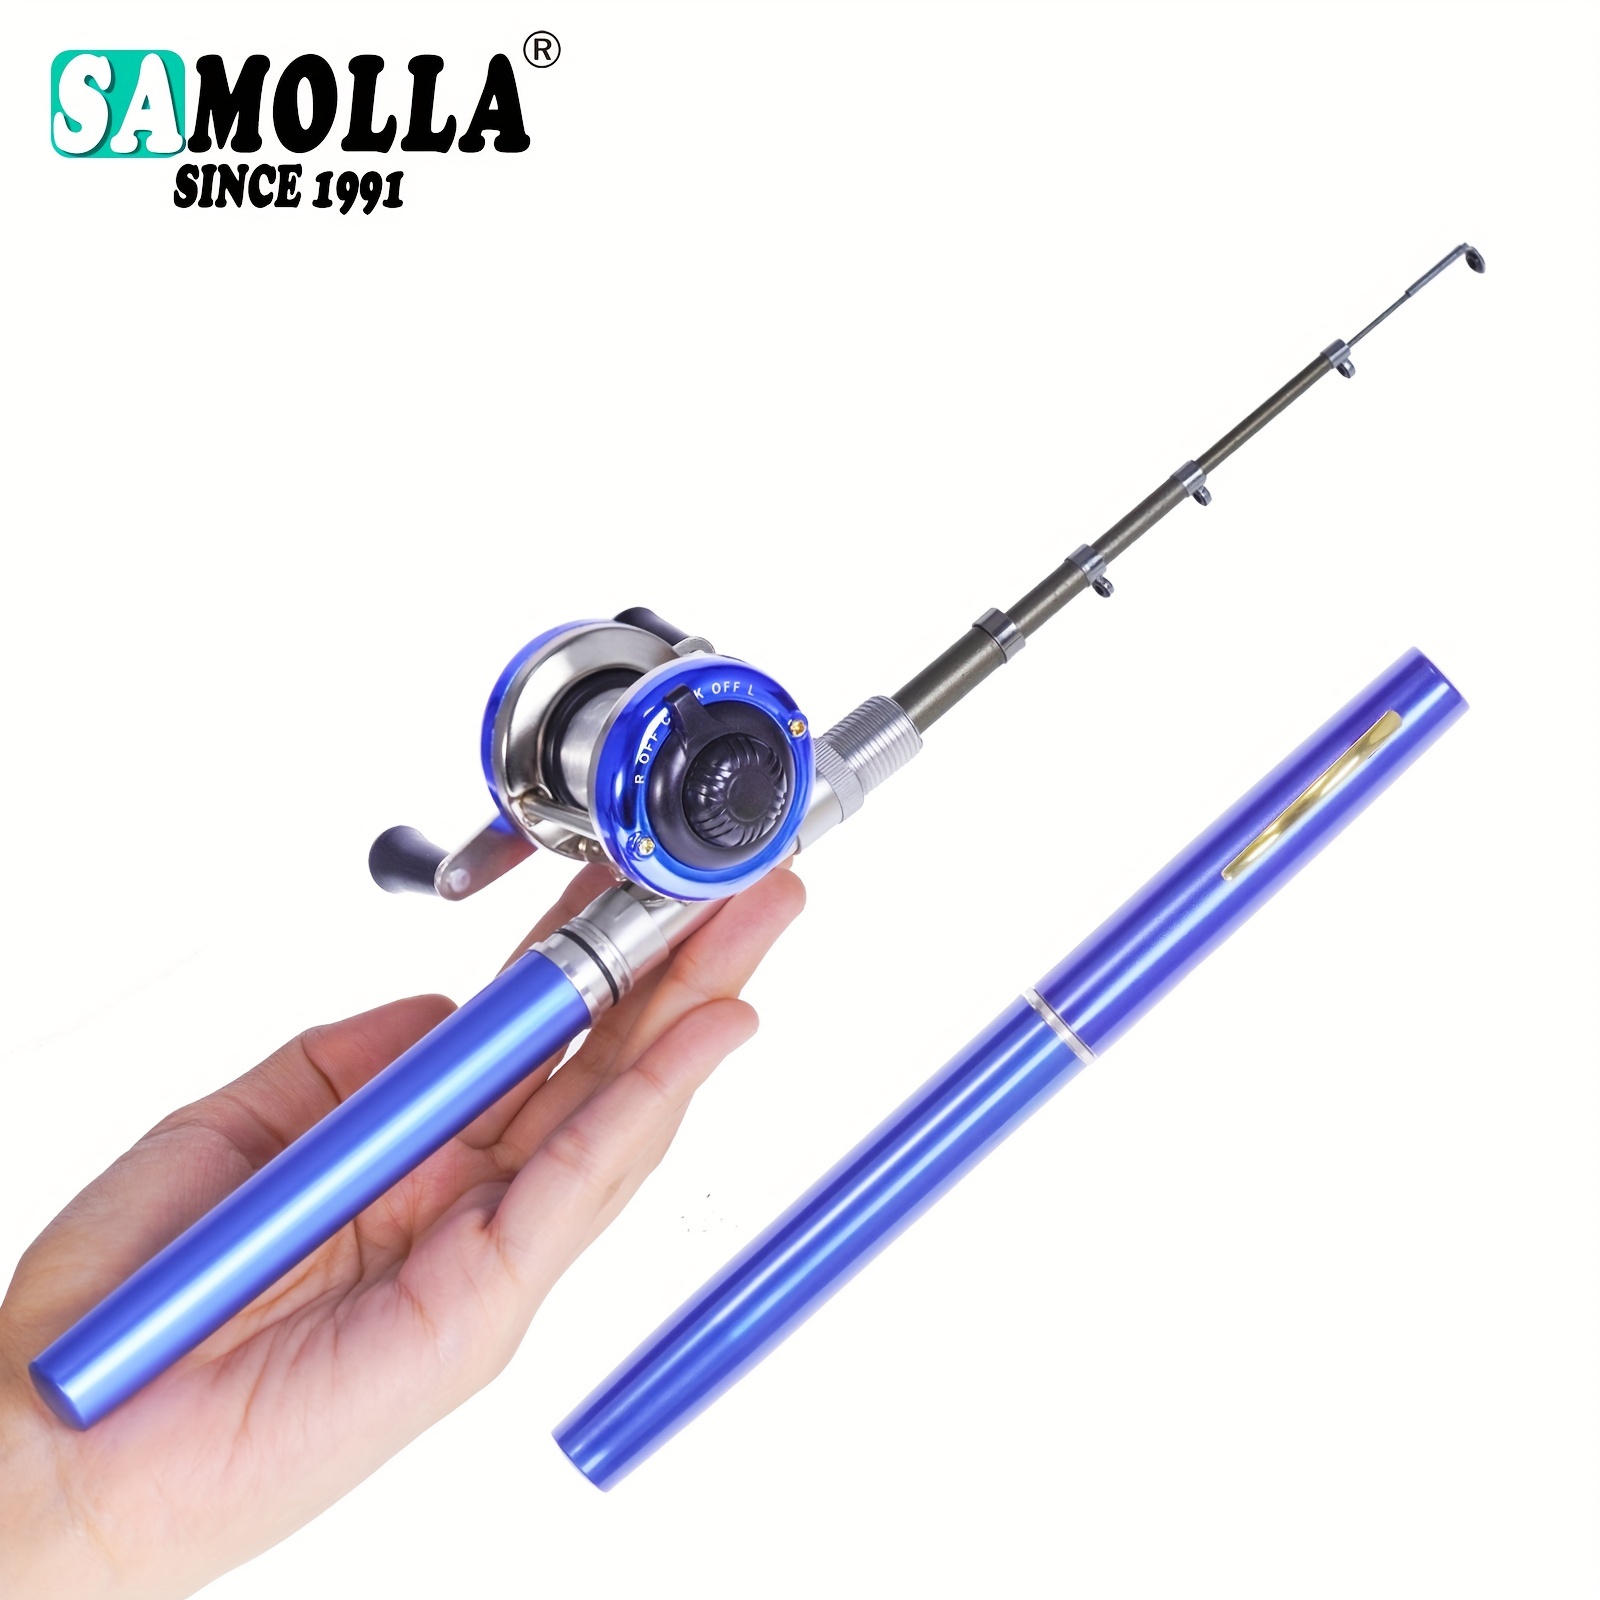 Leofishing Fishing Rod Spinning Reel Combos Kit Including / - Temu